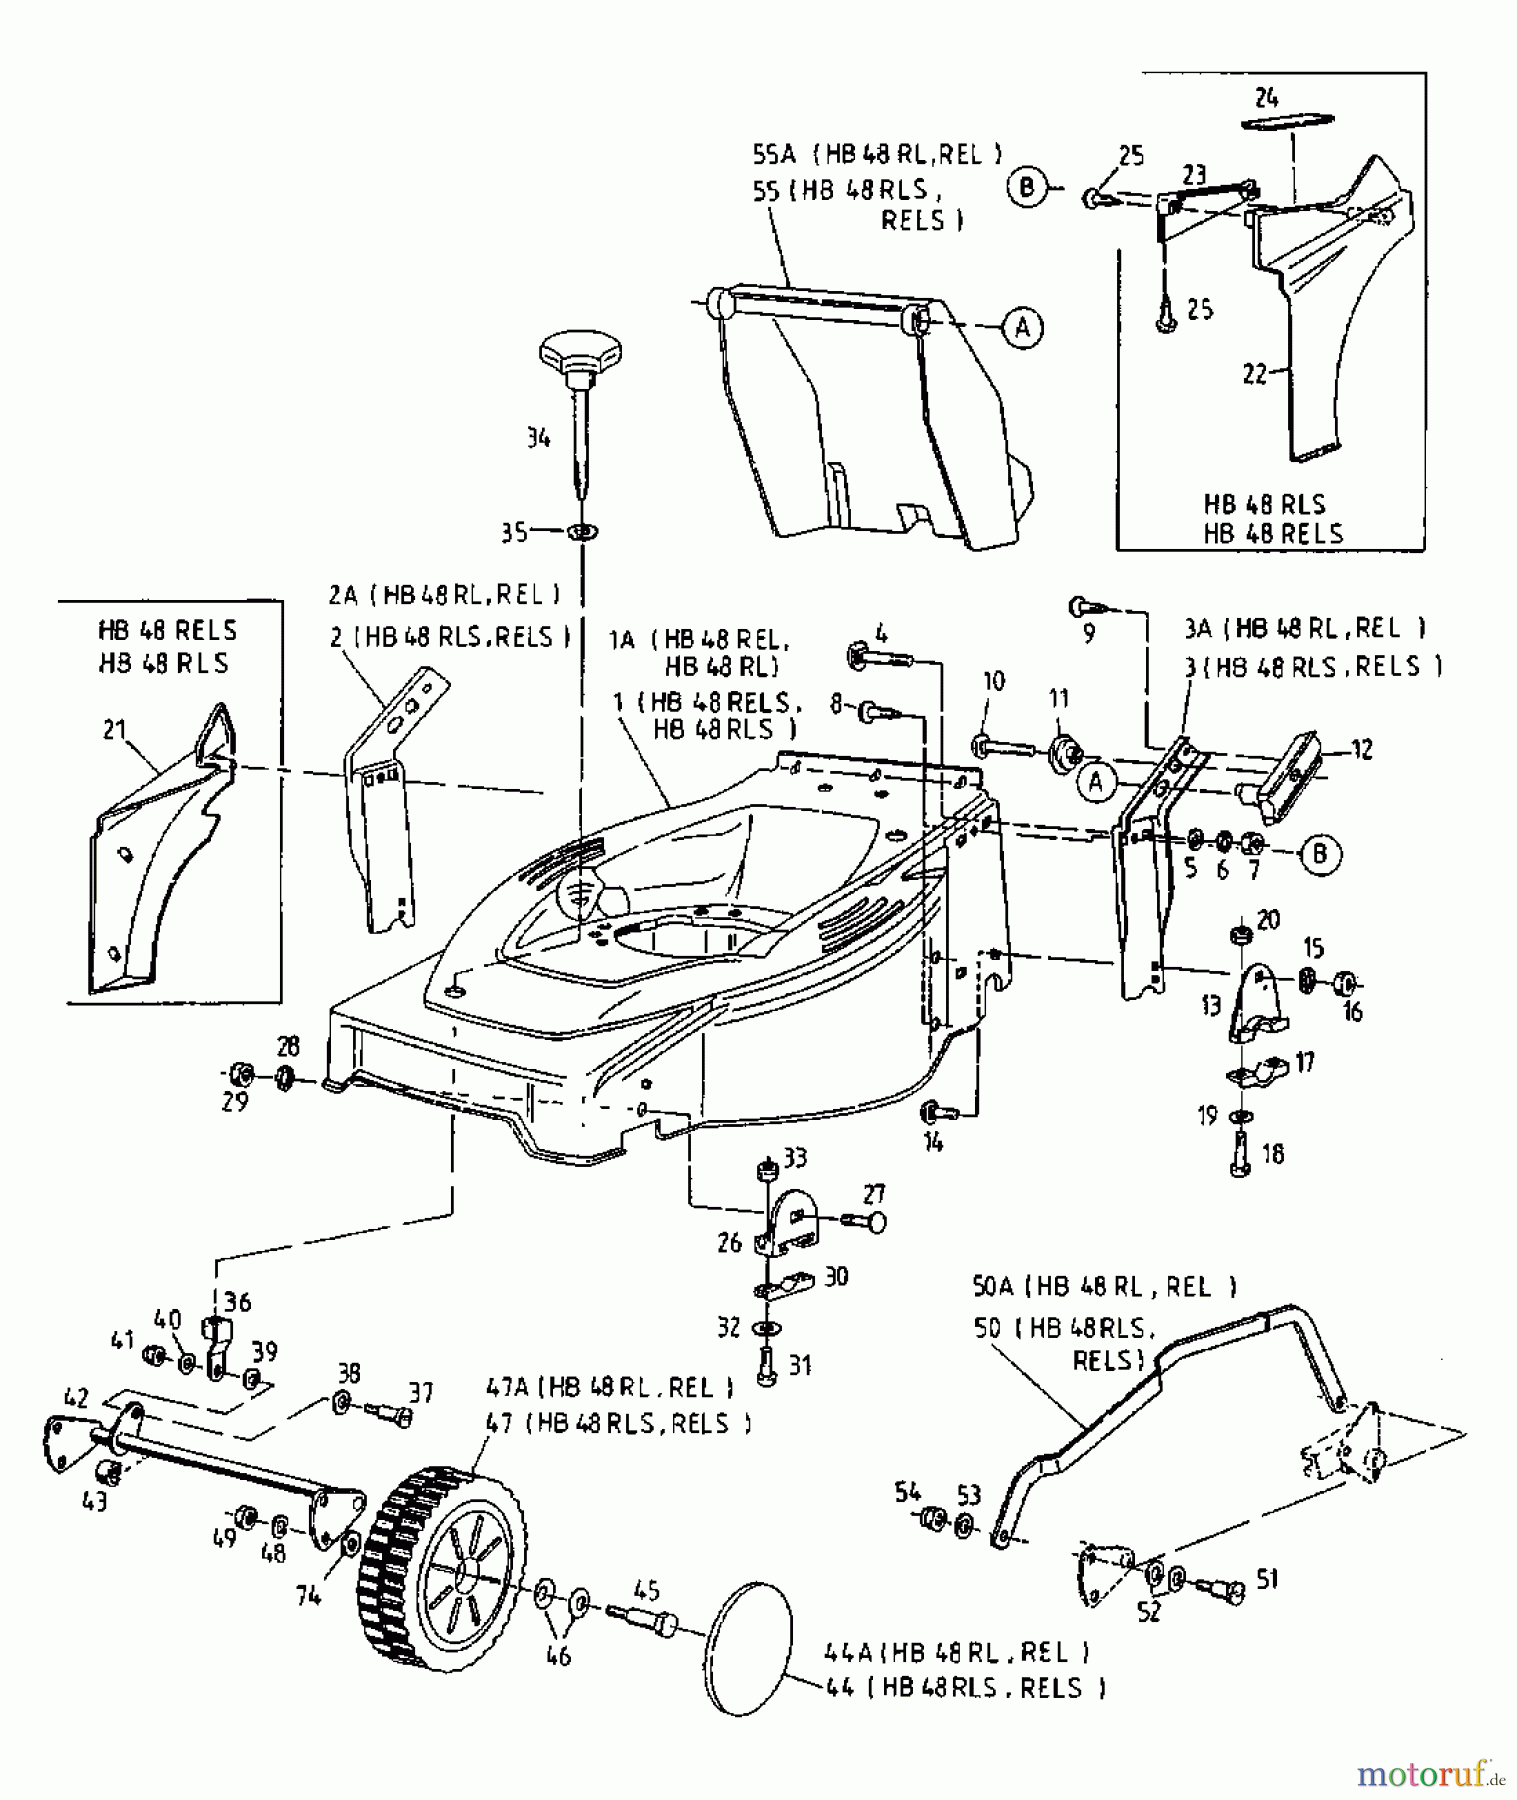  Gutbrod Motormäher mit Antrieb HB 48 RELS 12CET58Y690  (2000) Grundgerät